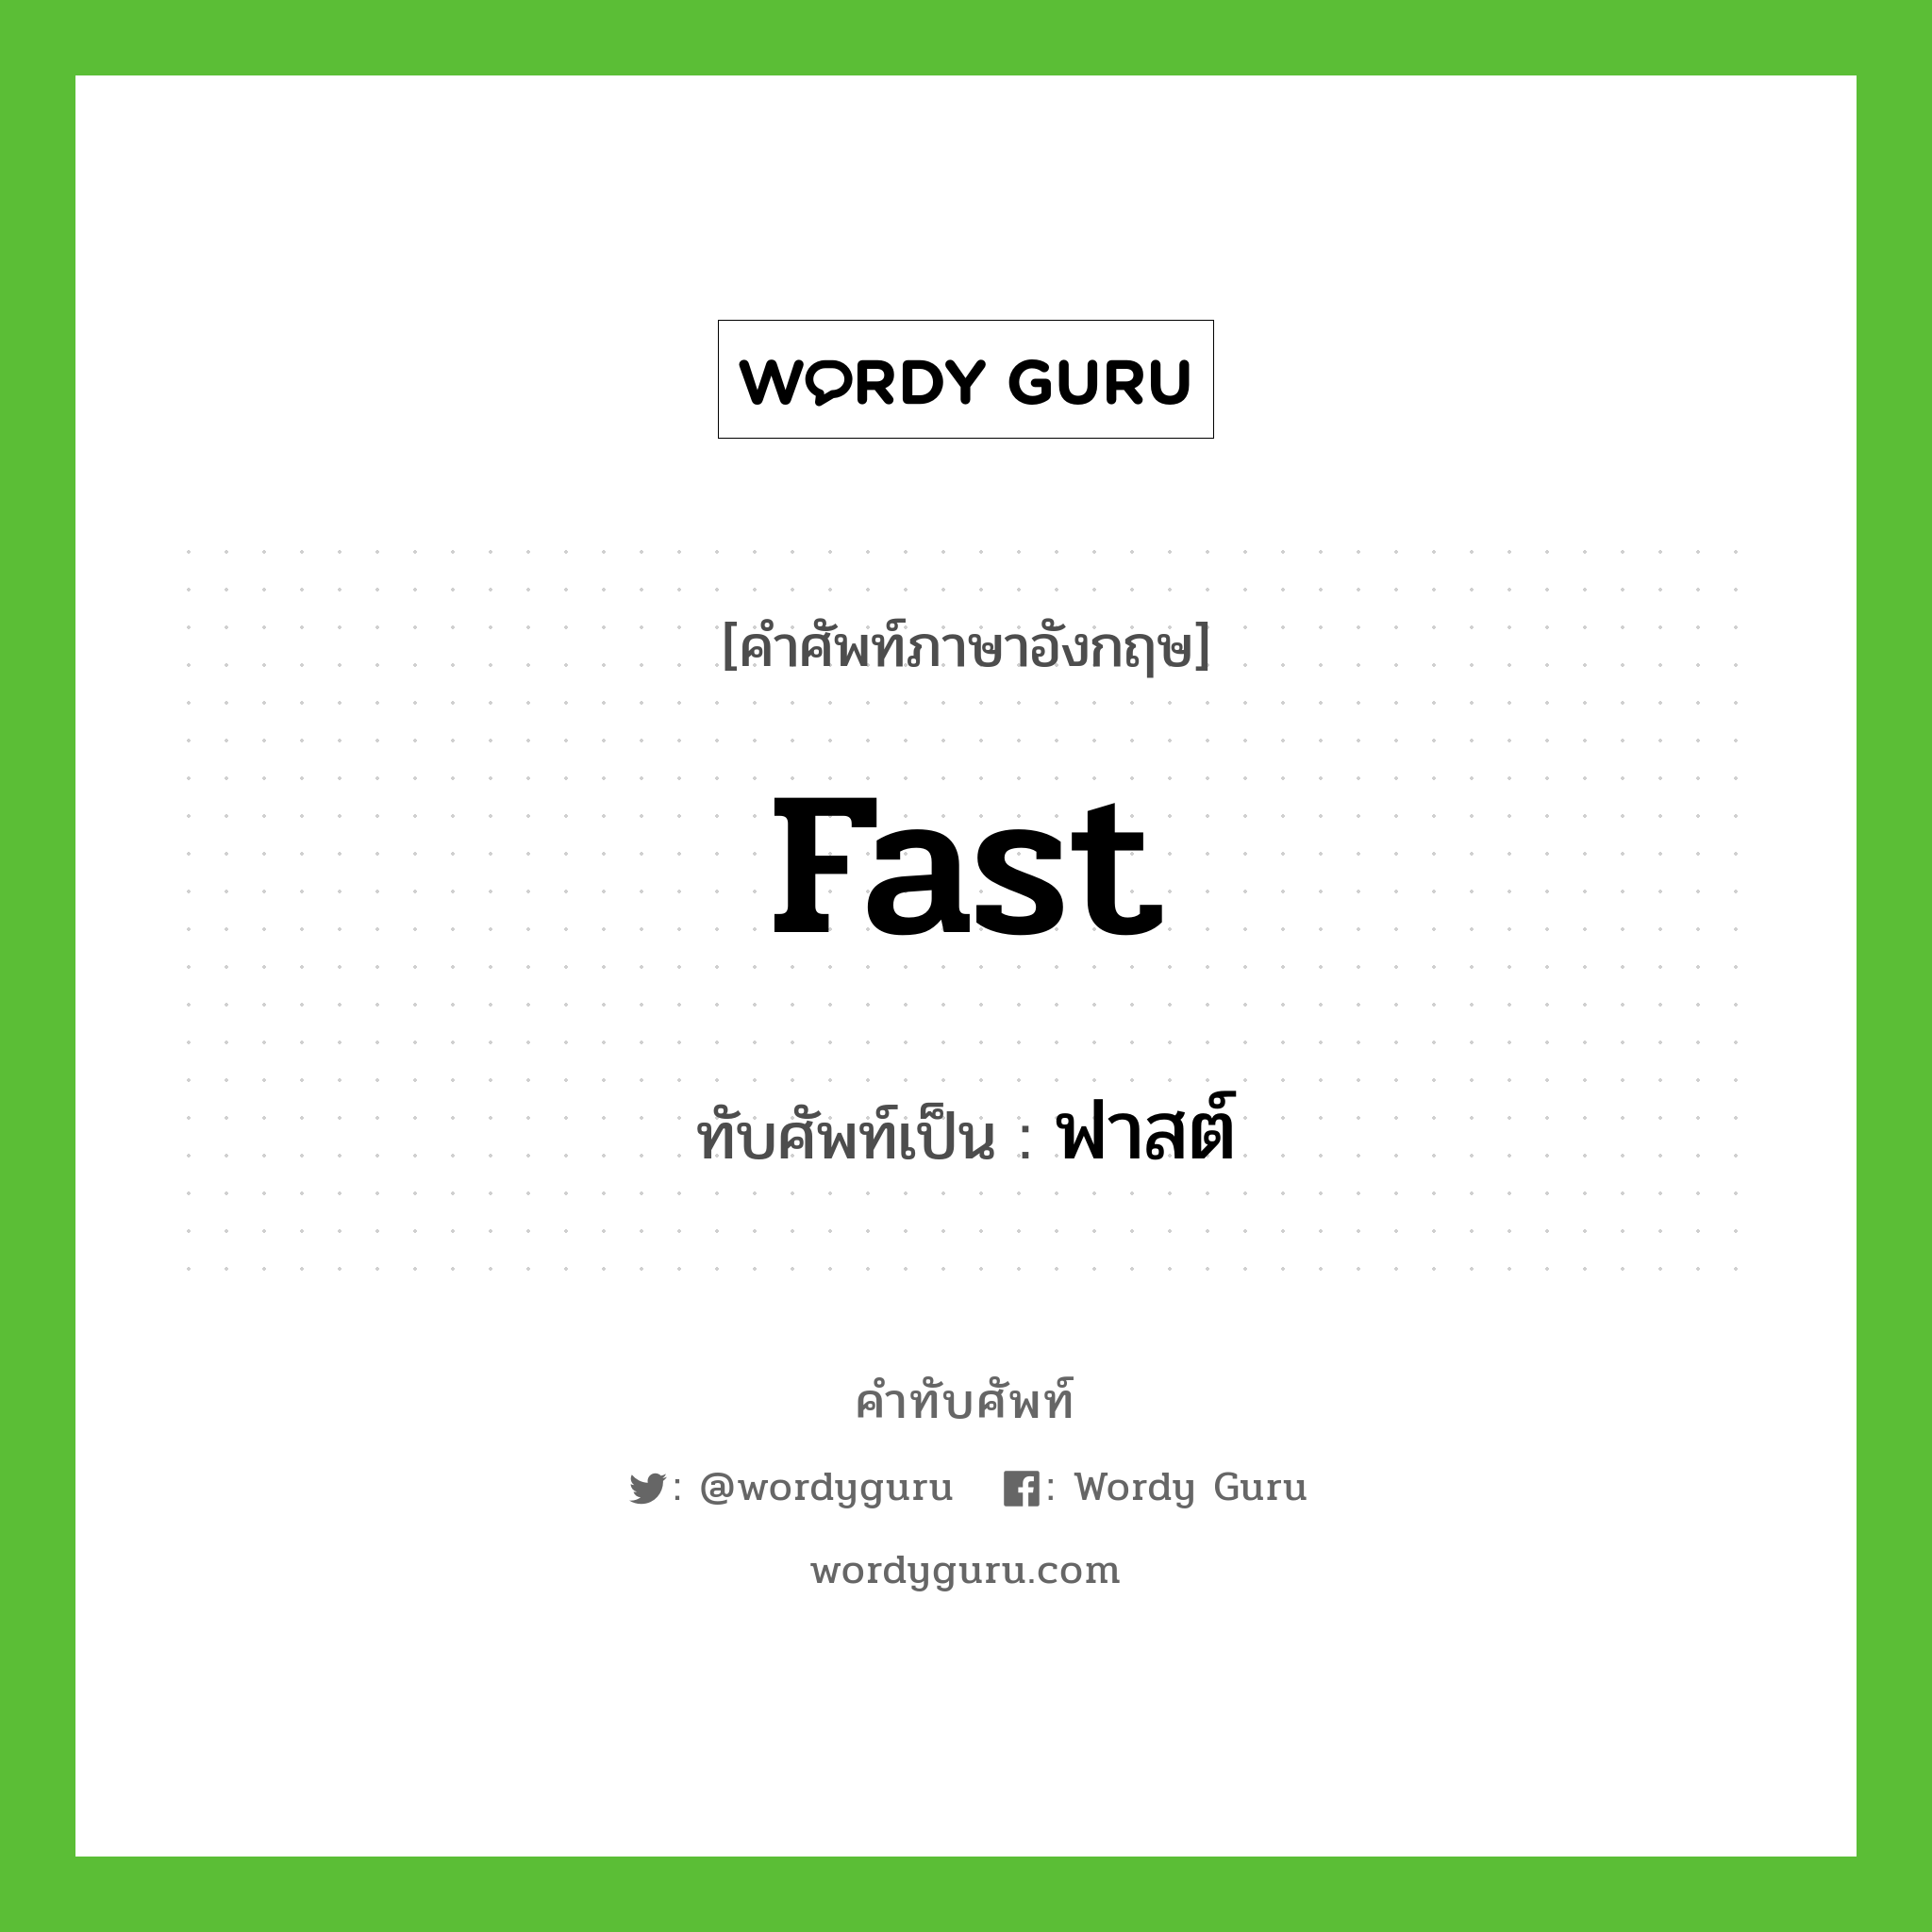 fast เขียนเป็นคำไทยว่าอะไร?, คำศัพท์ภาษาอังกฤษ fast ทับศัพท์เป็น ฟาสต์